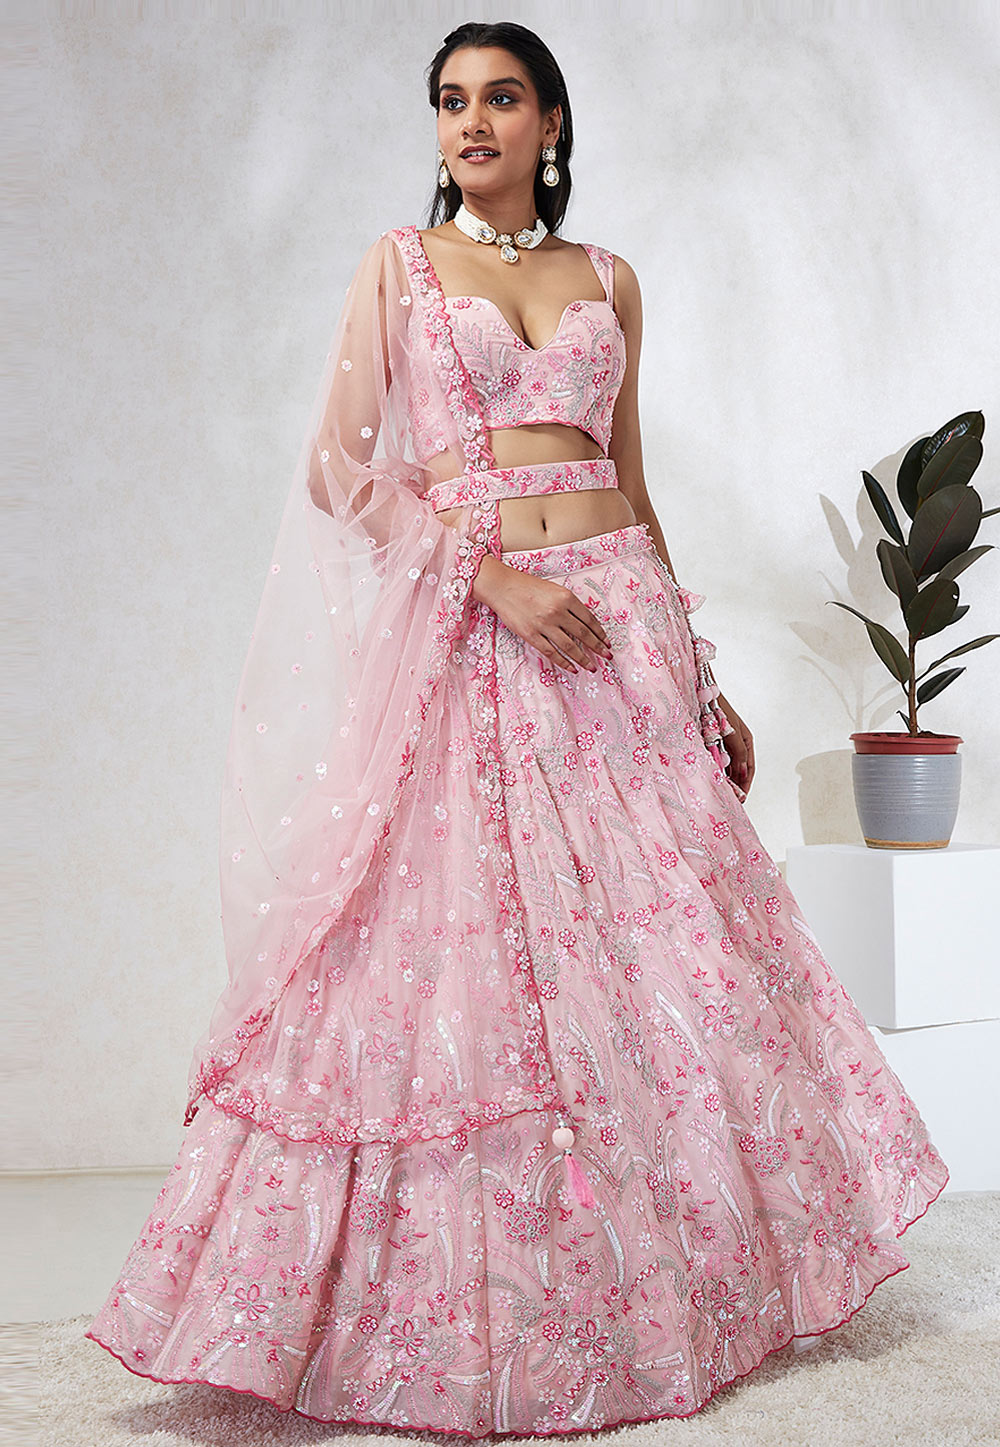 साड़ी से लहंगा बनाएं। How to Make Lehenga with Saree। Purani Saree Se New  Dress | how to make lehenga with saree | HerZindagi